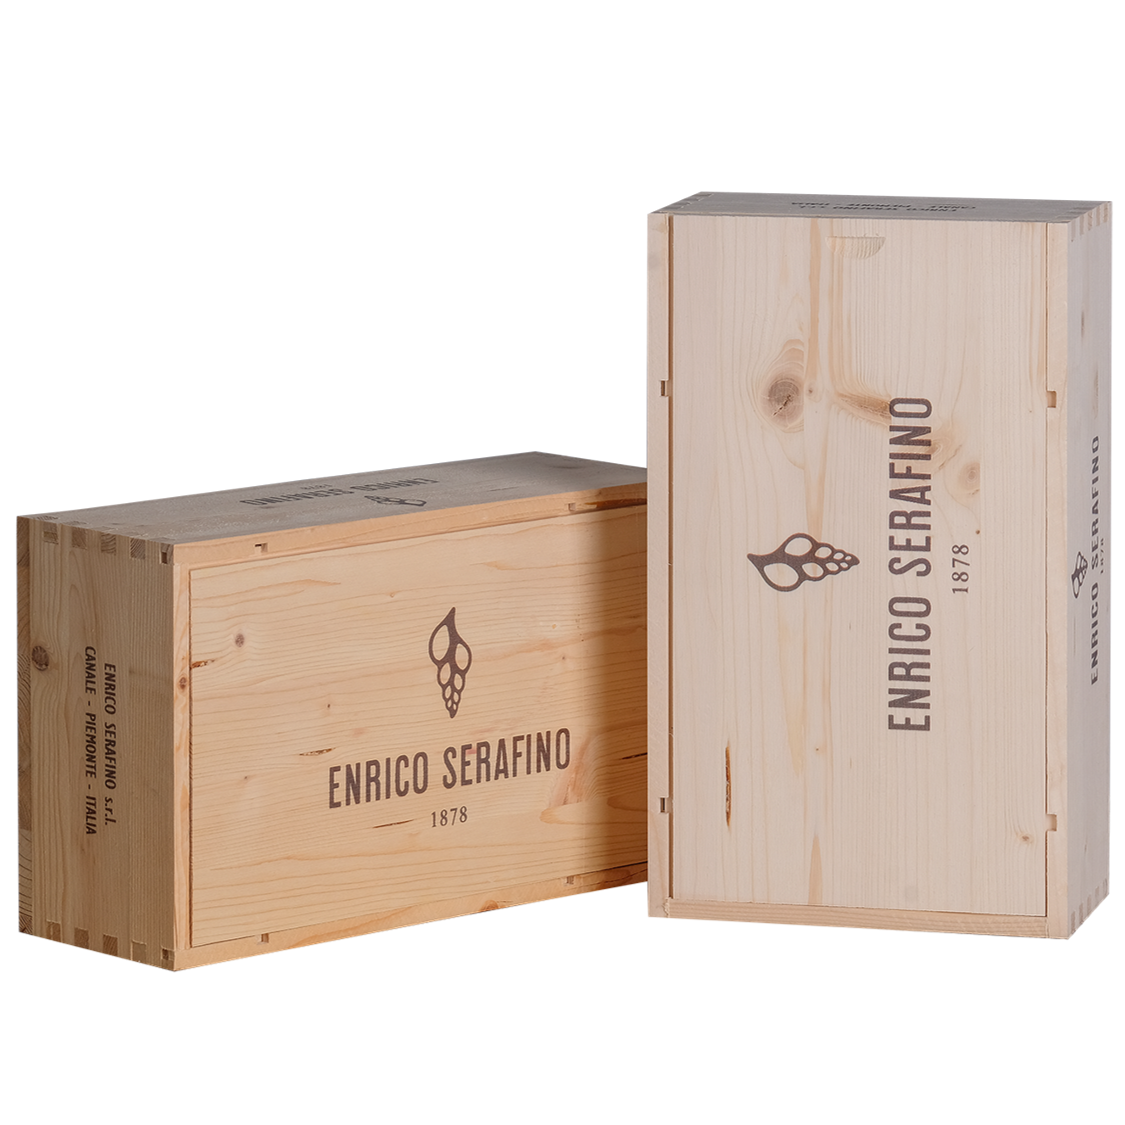 Cassa in legno per 2 bottiglie - Enrico Serafino